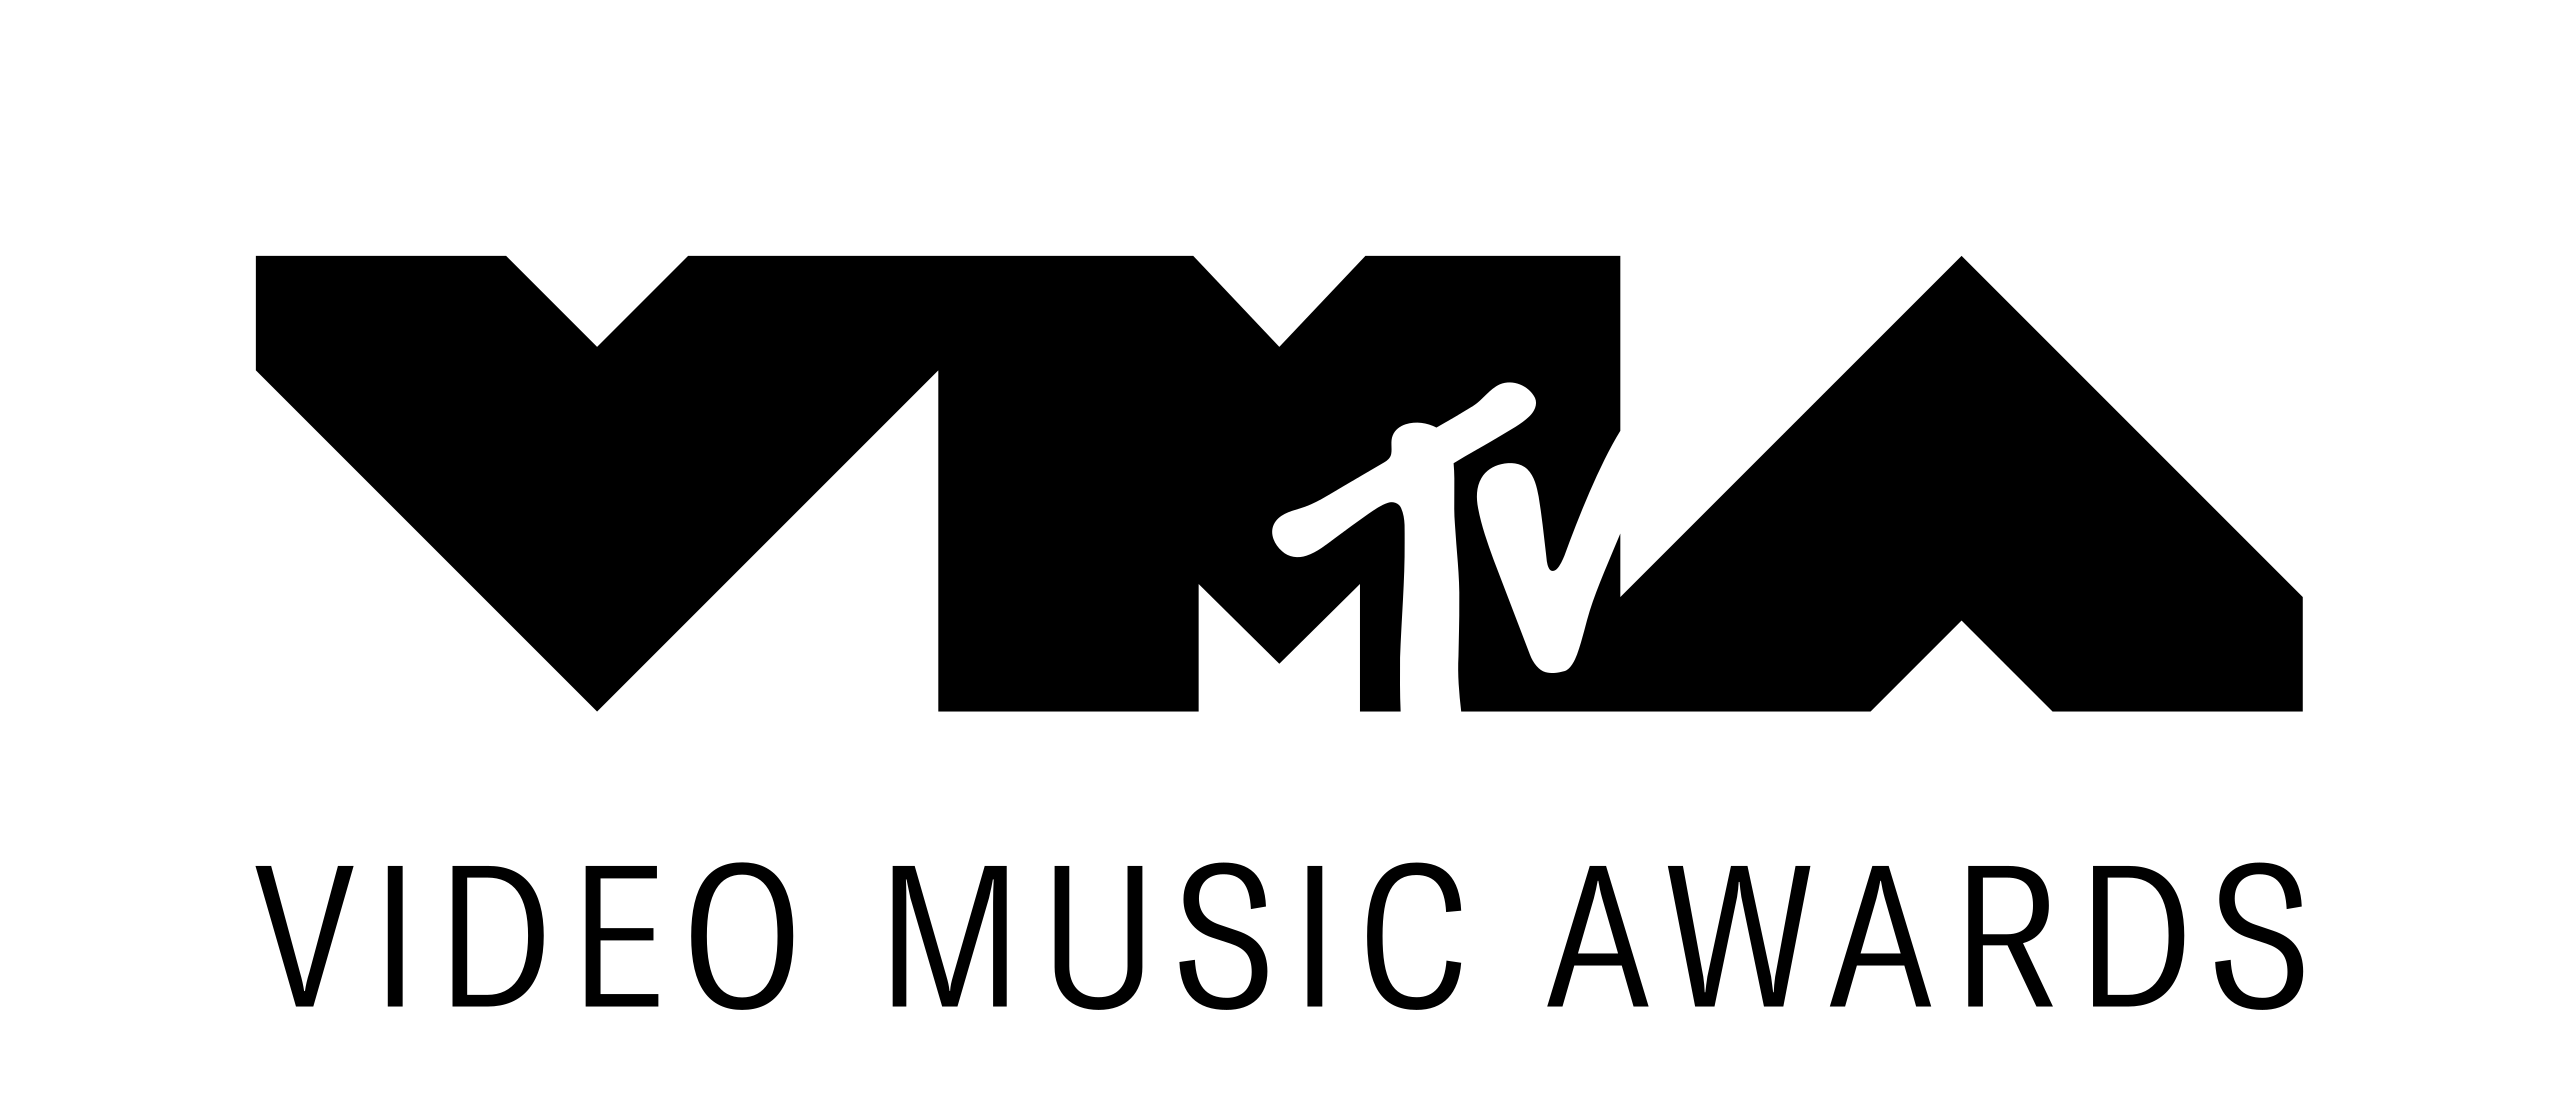 VMA-video-music-awards